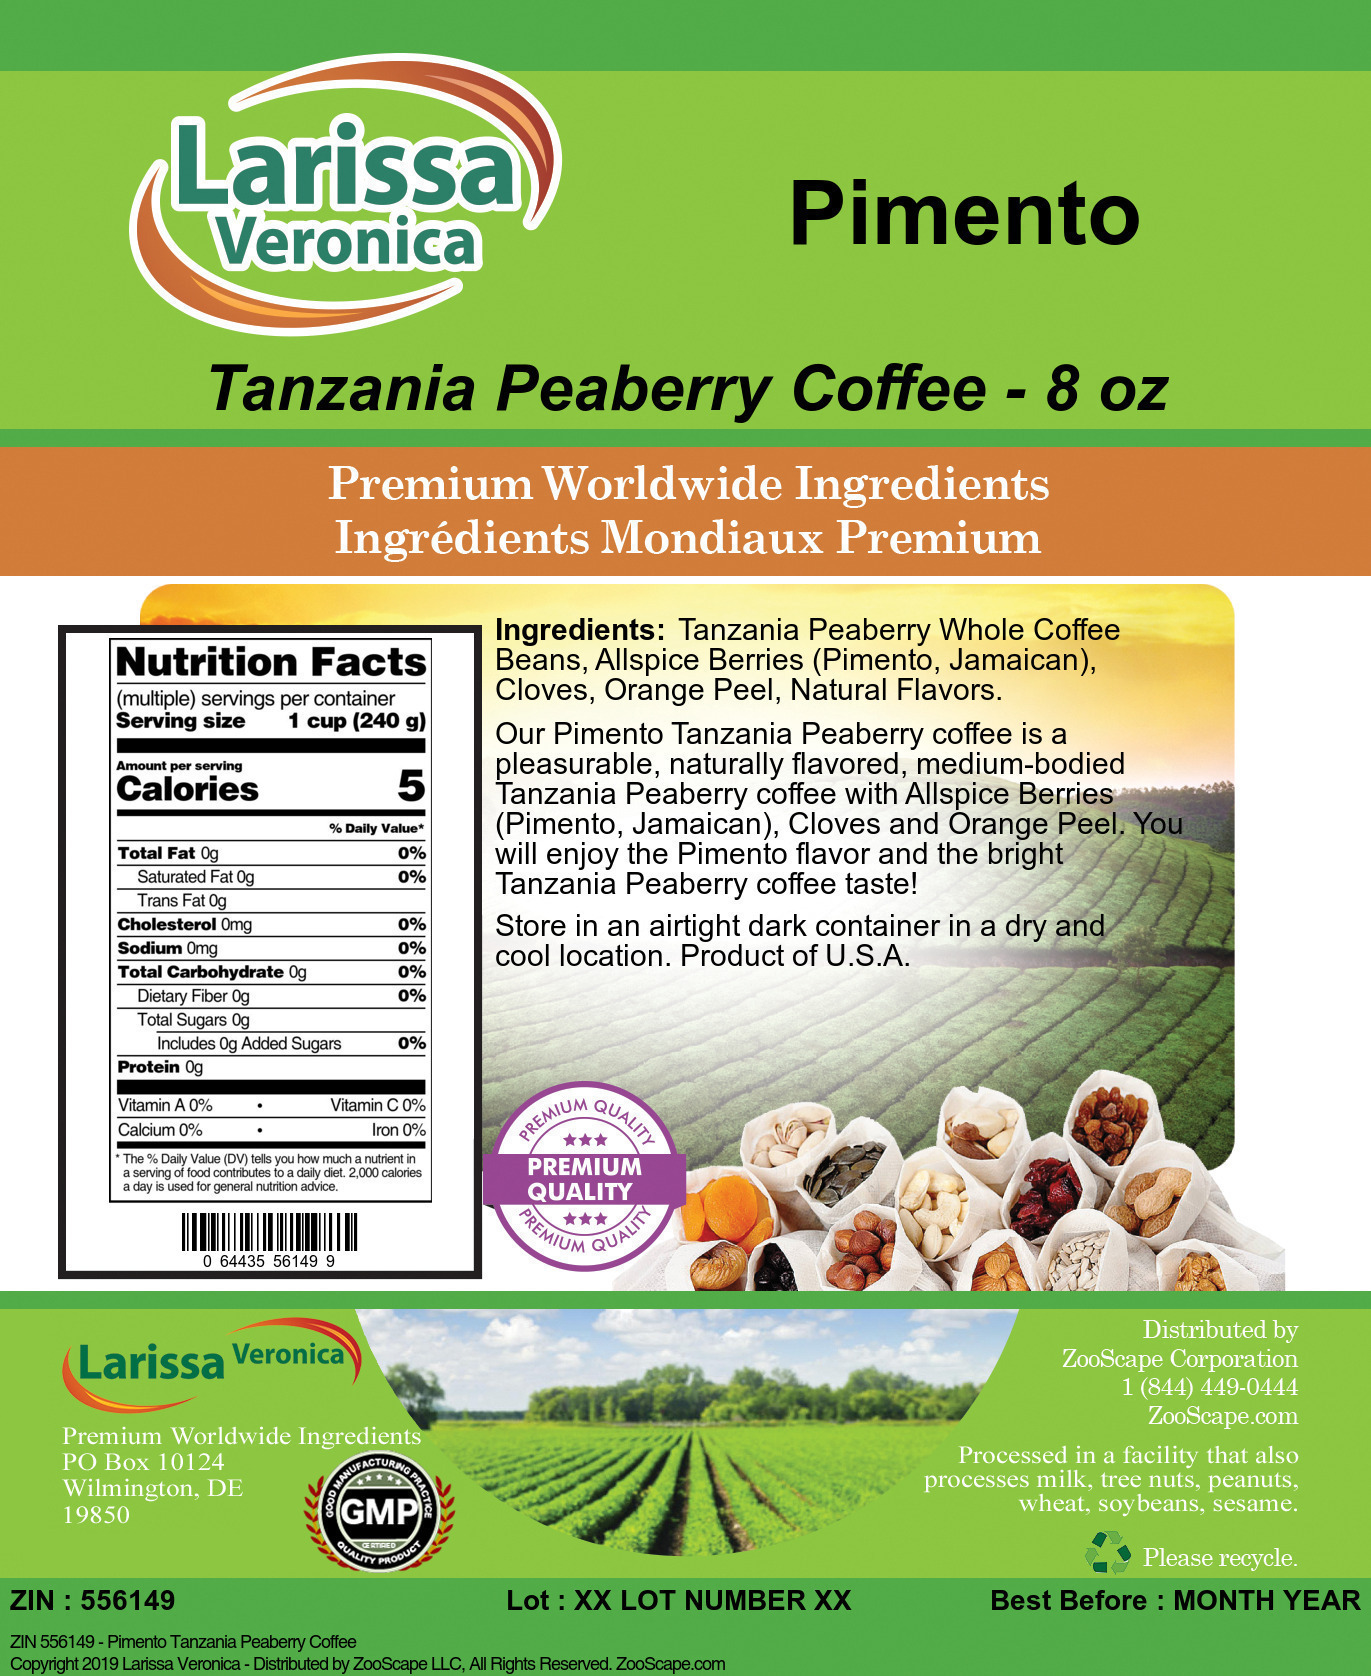 Pimento Tanzania Peaberry Coffee - Label